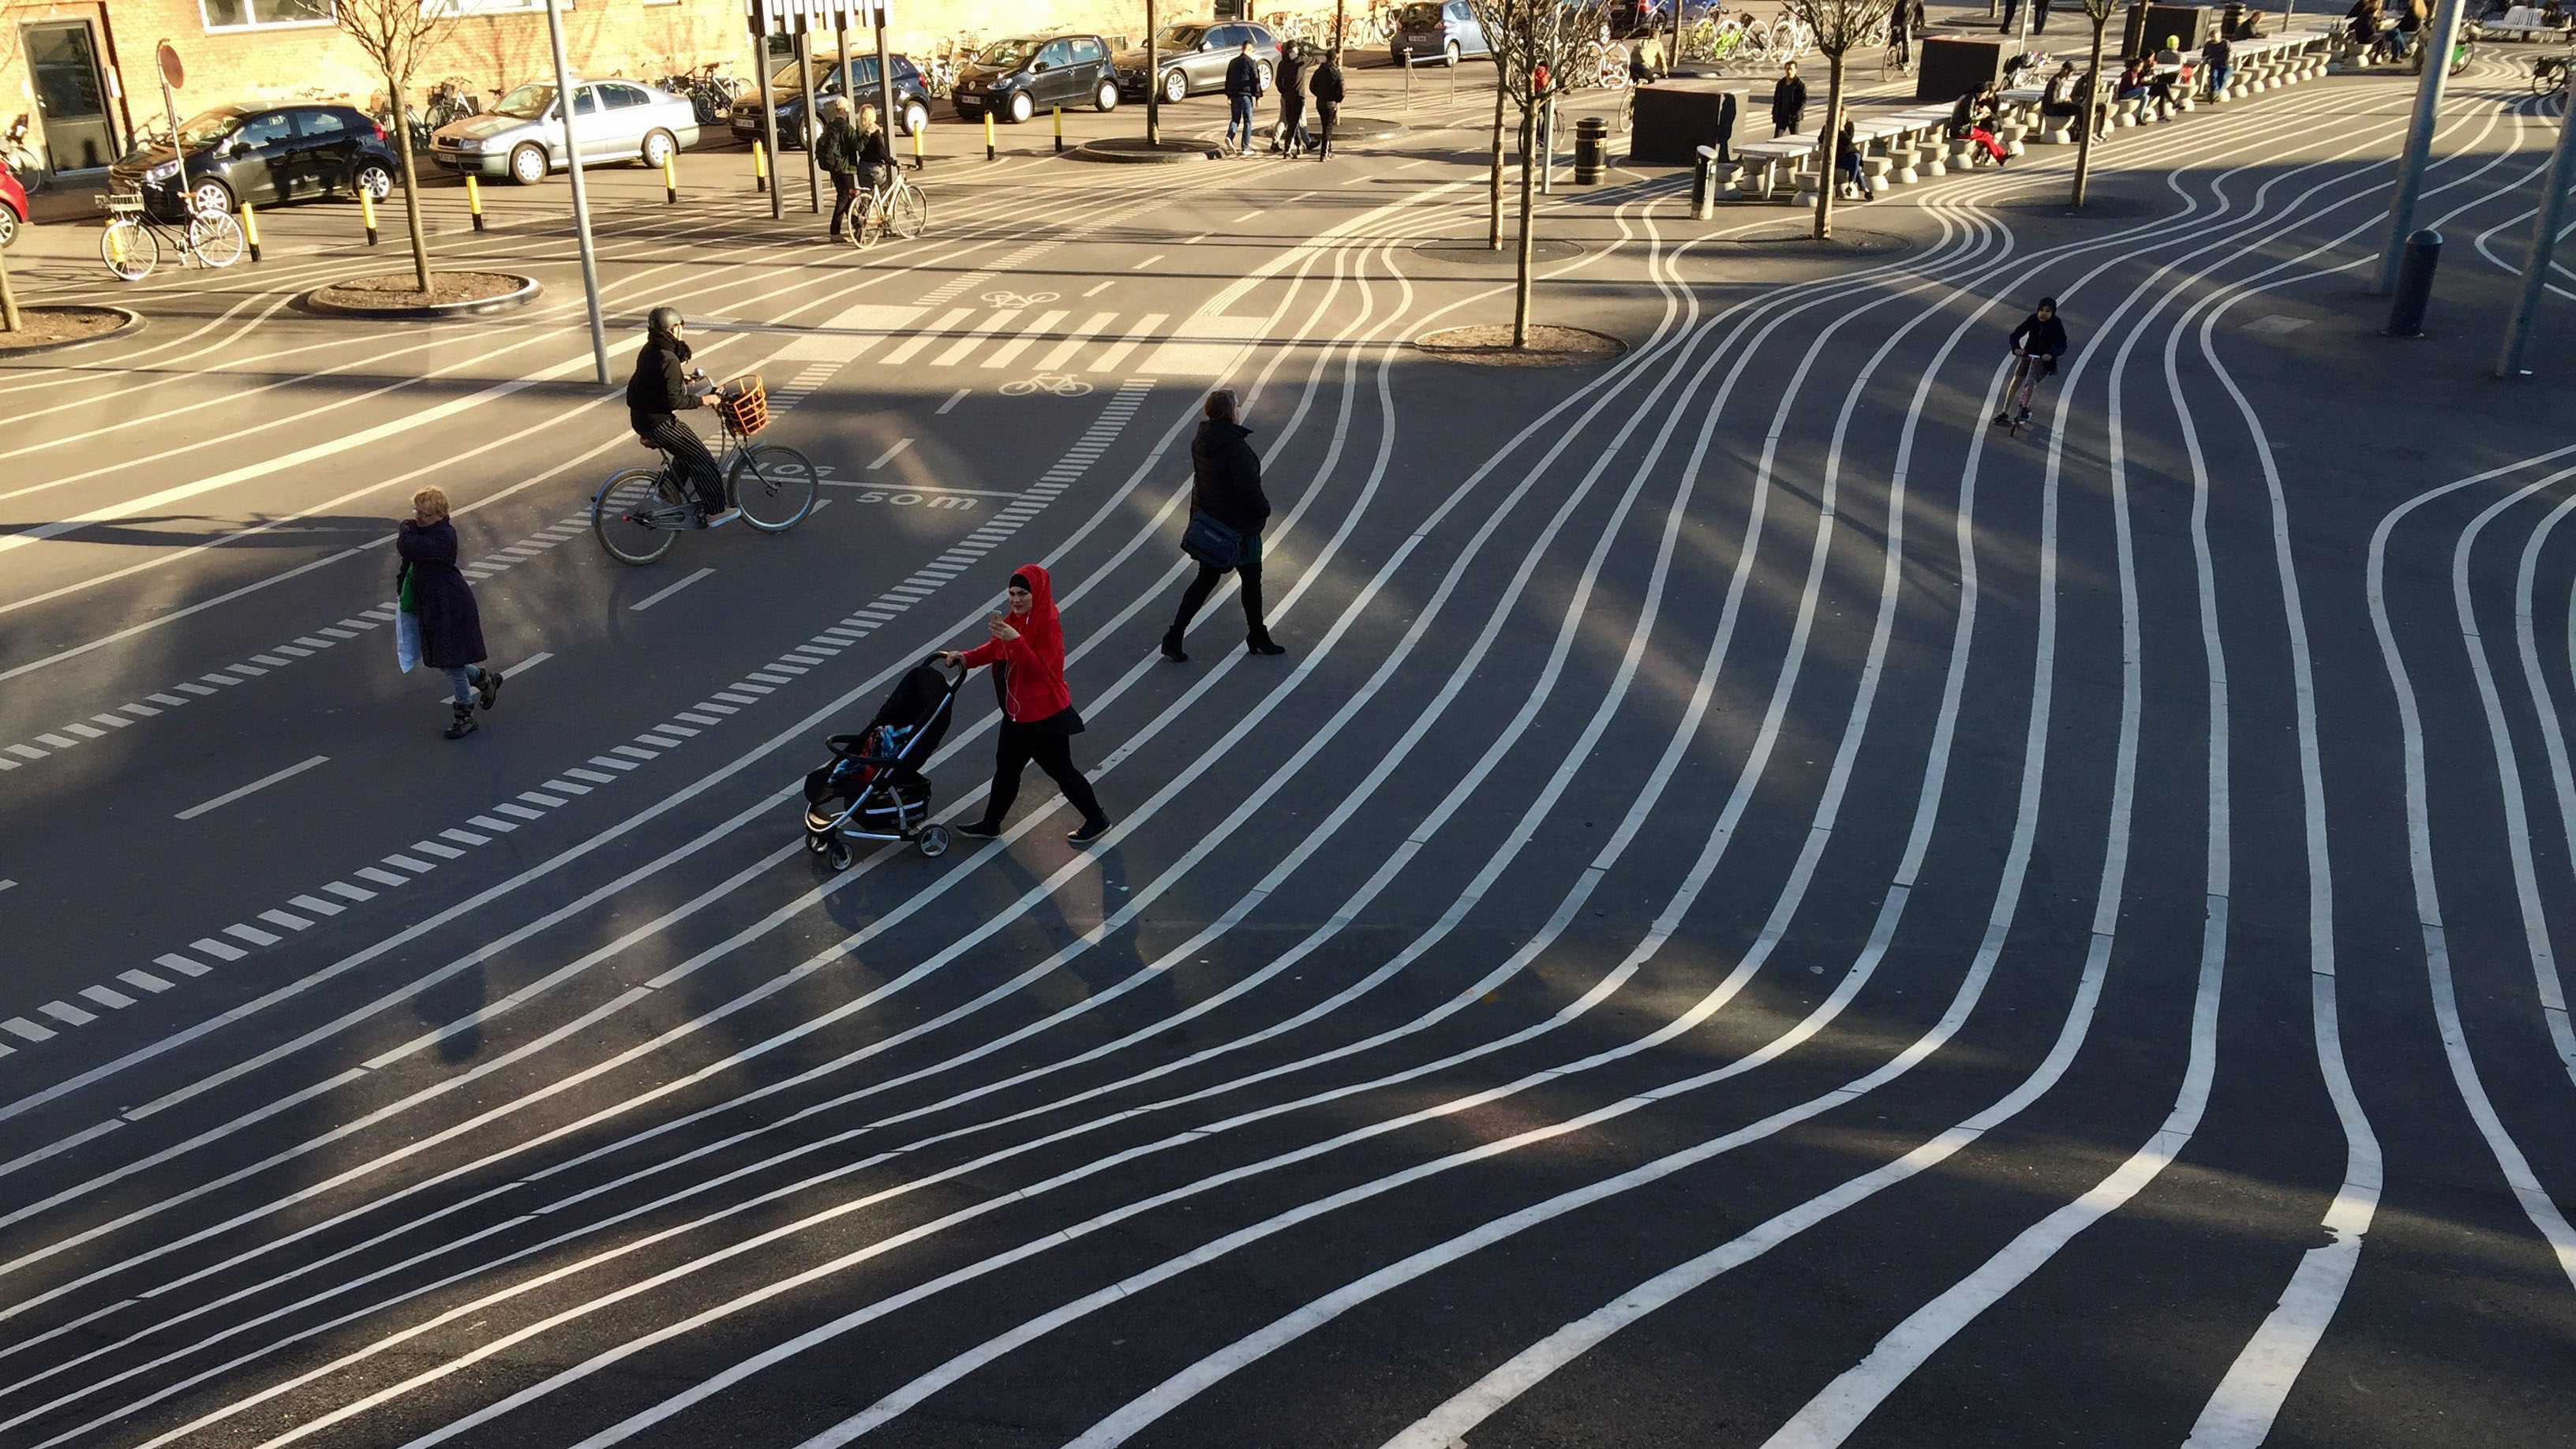 Superkilen: Superkilen is een park/plein in een multiculturele wijk in Kopenhagen. Het ontwerp van deze openbare ruime is gericht op het stimuleren van integratie over de grenzen van religie, etniciteit en cultuur. Het project won in 2016 de prestigieuze Aga Khan Award voor Architectuur. (fotograaf: Marc Glaudemans)